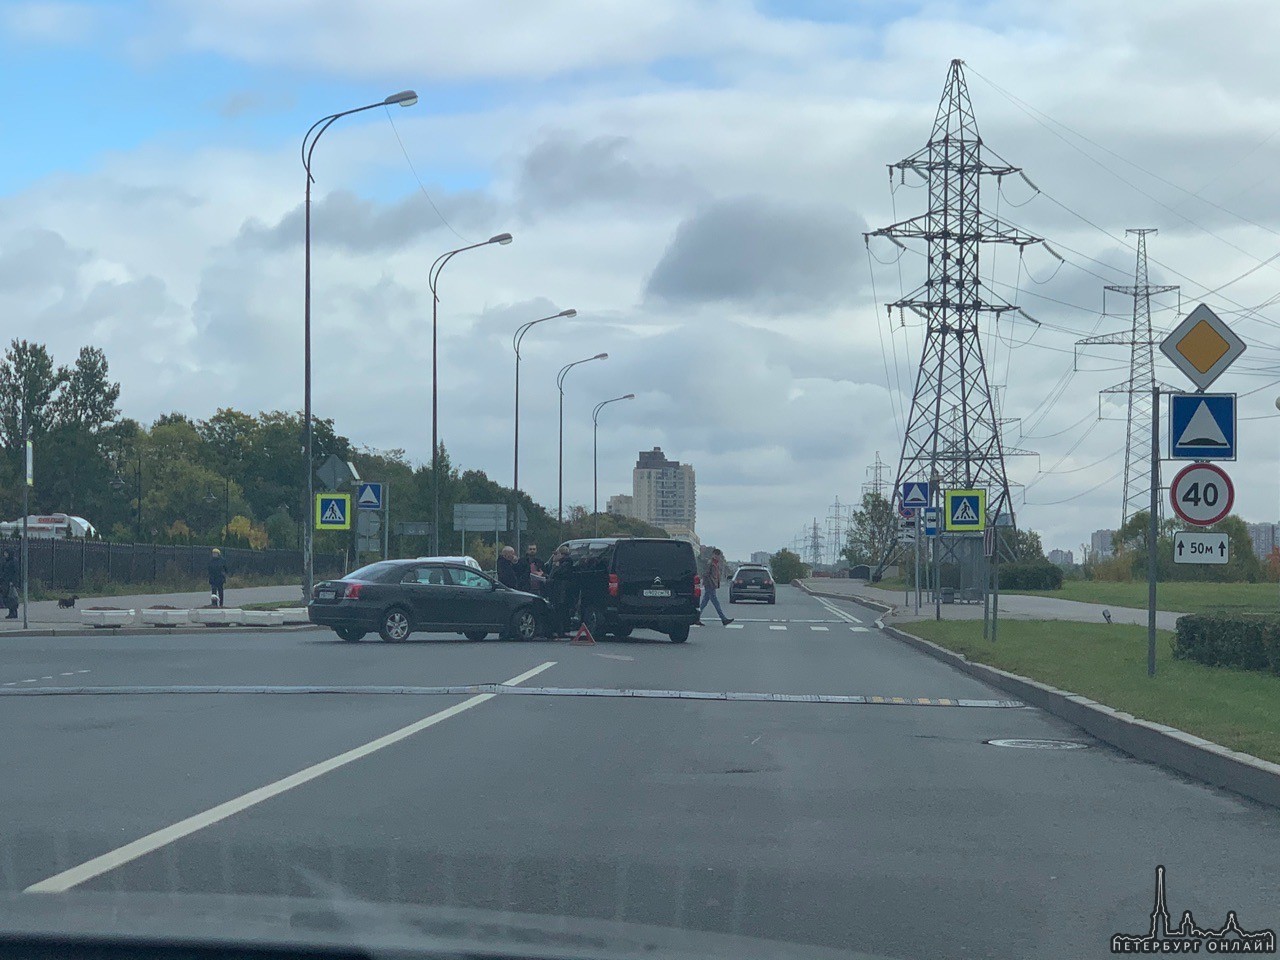 Выезд с улицы Катерников на боковой проезд Петергофского шоссе не получился